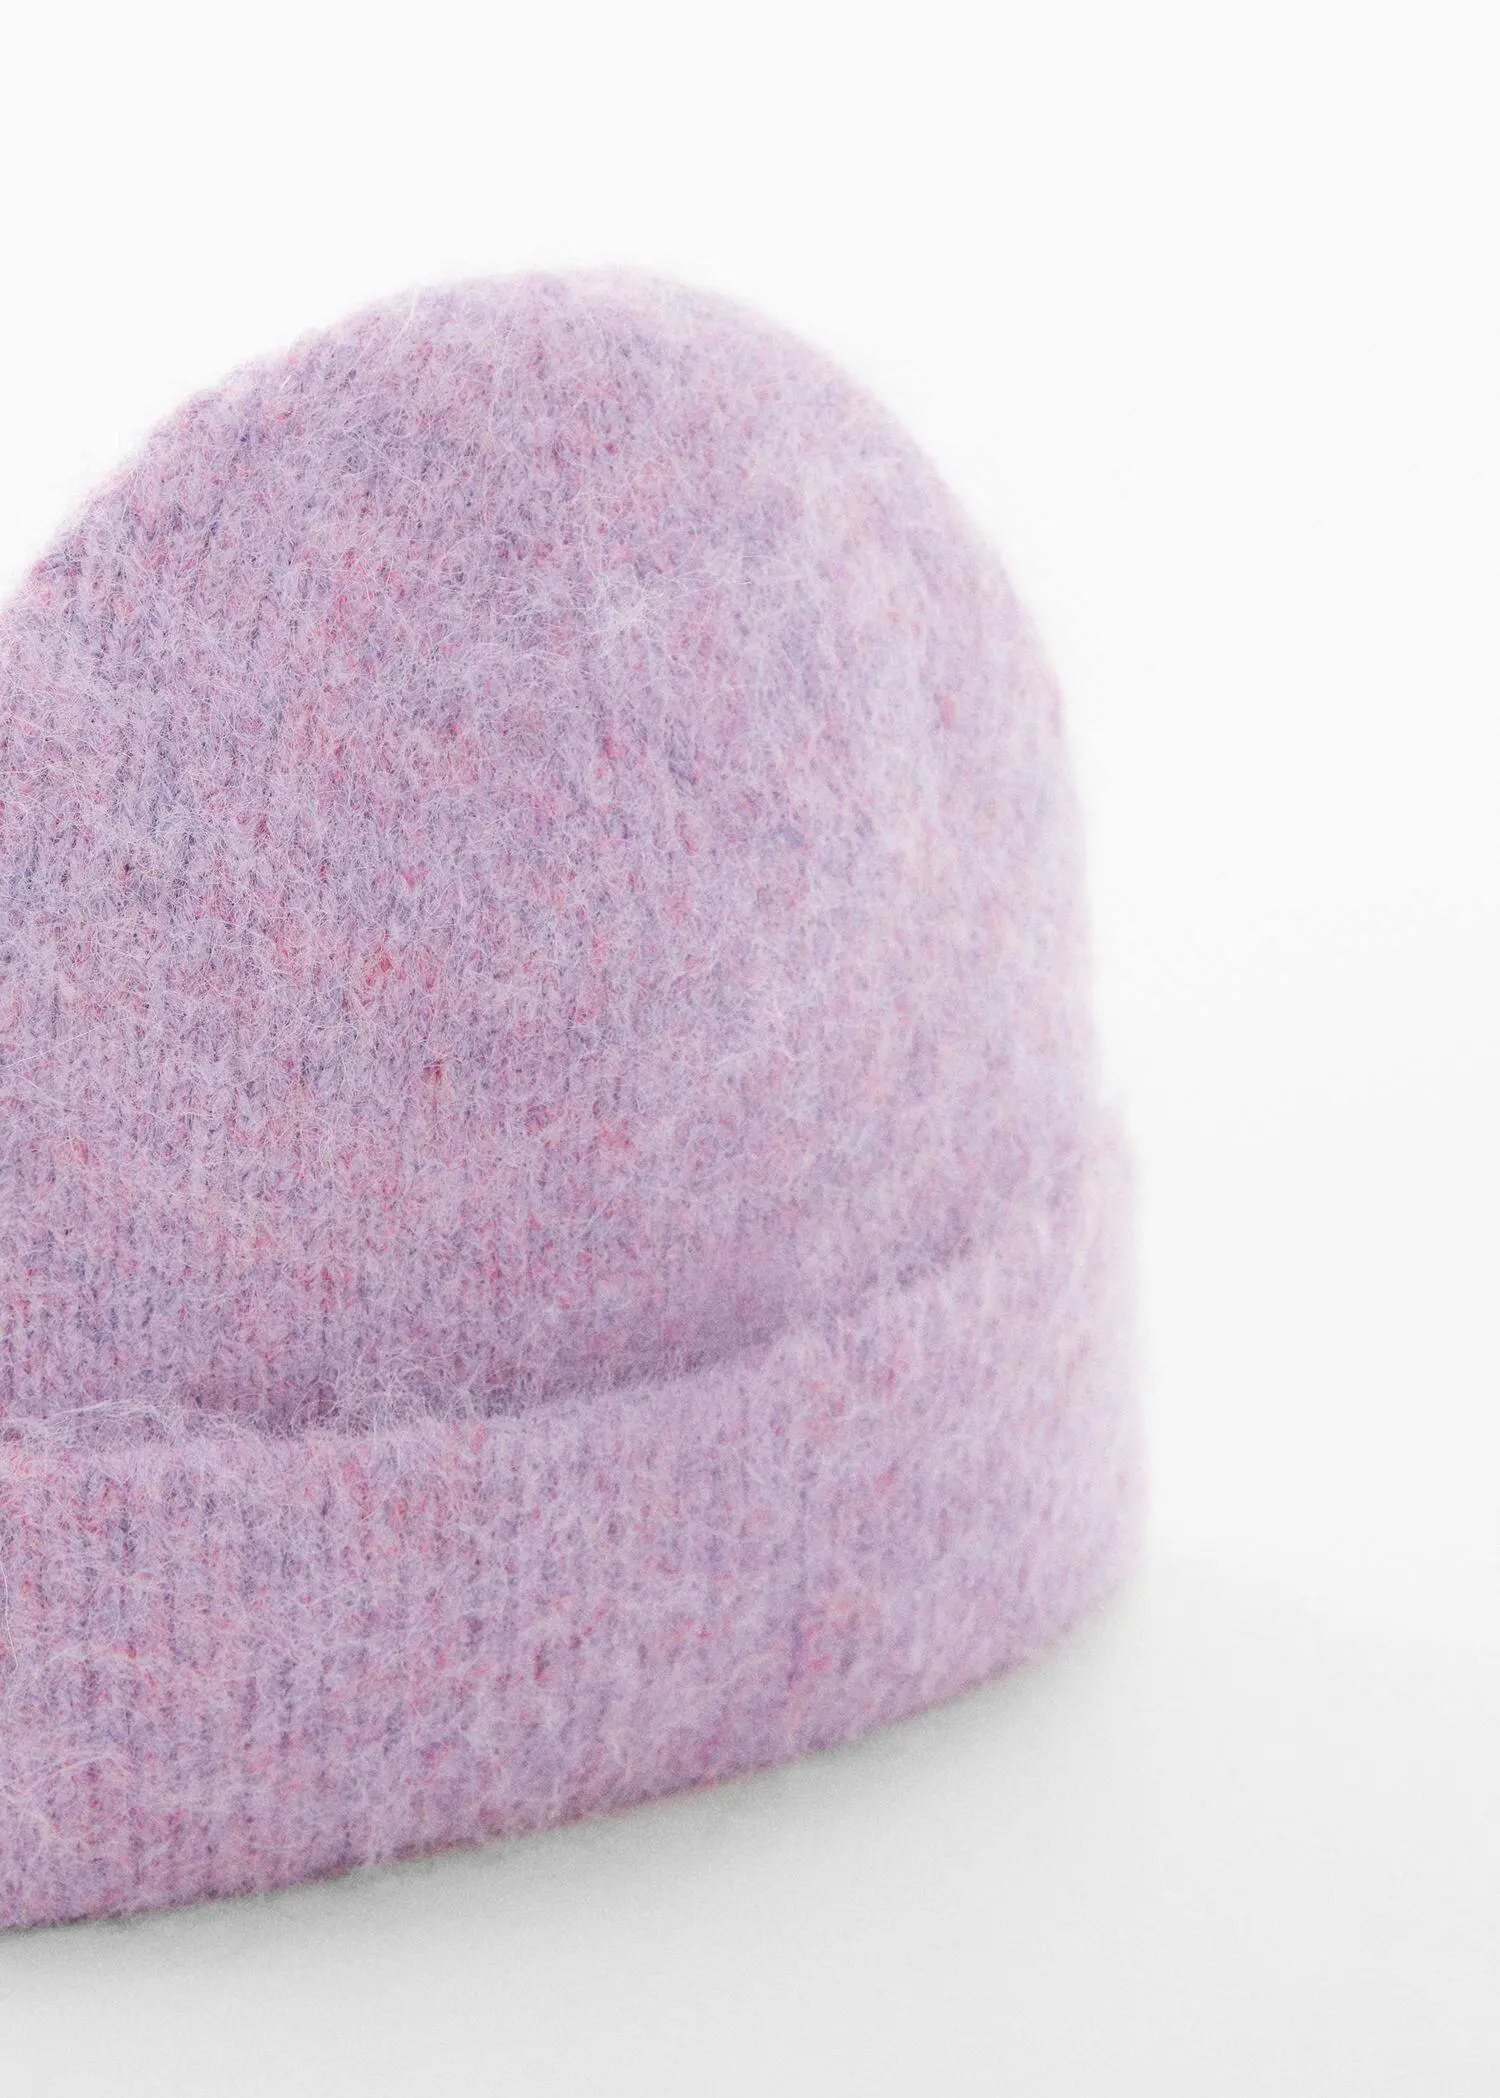 Mango Knitted wool-blend cap. 3